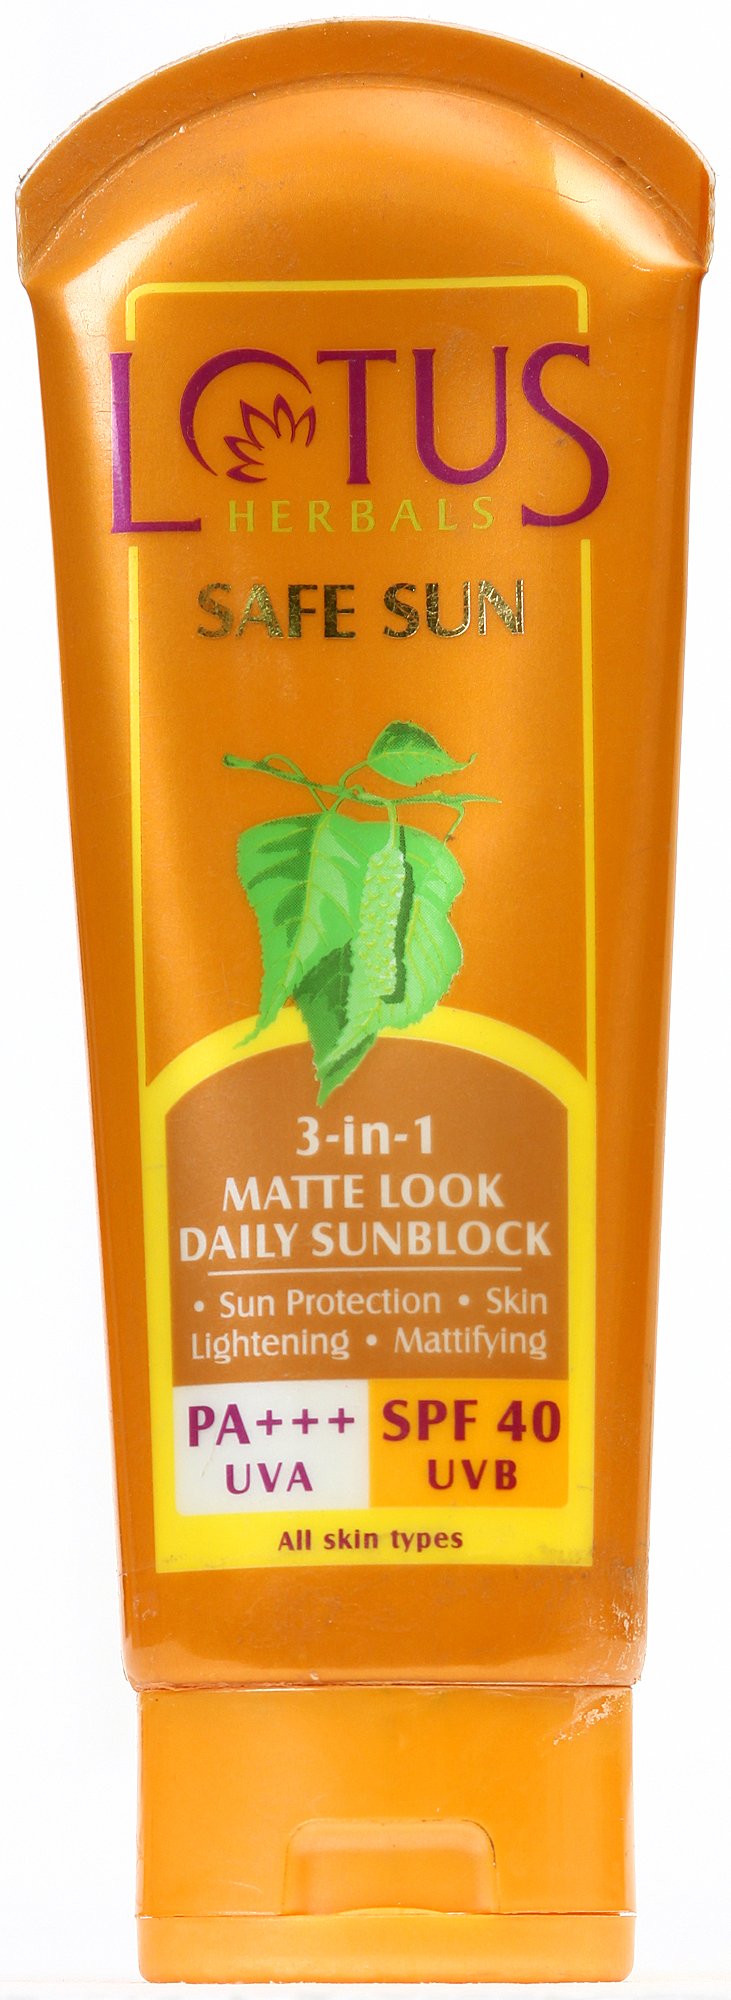 Lotus Herbals Safe Sun 3-in-1 Matte Look Daily Sunblock - book cover